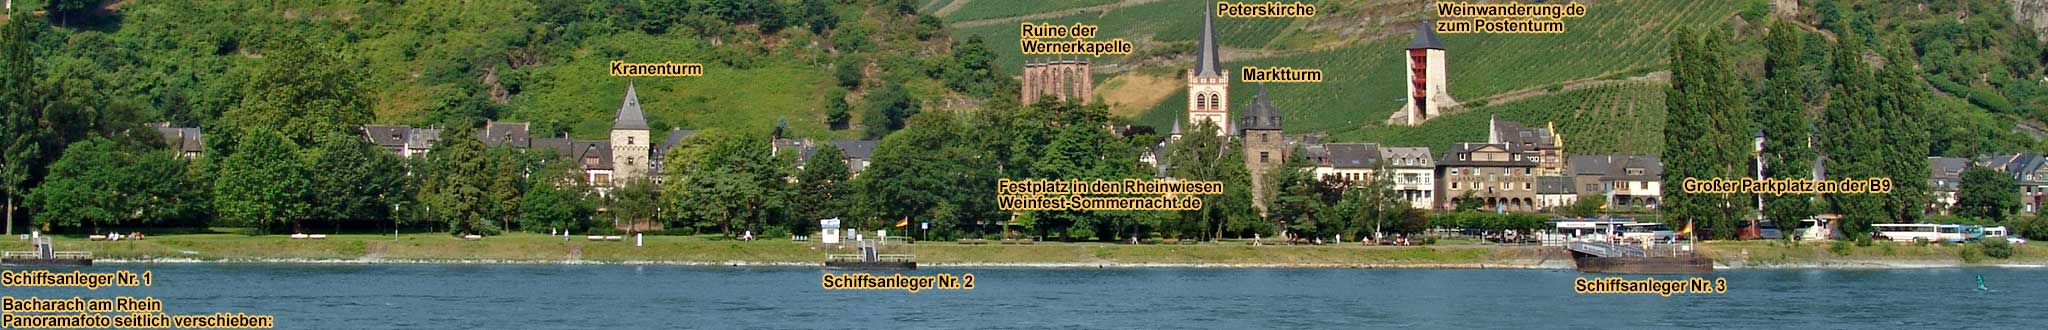 Panoramabild von Bacharach am Rhein mit Schiffsanlegern